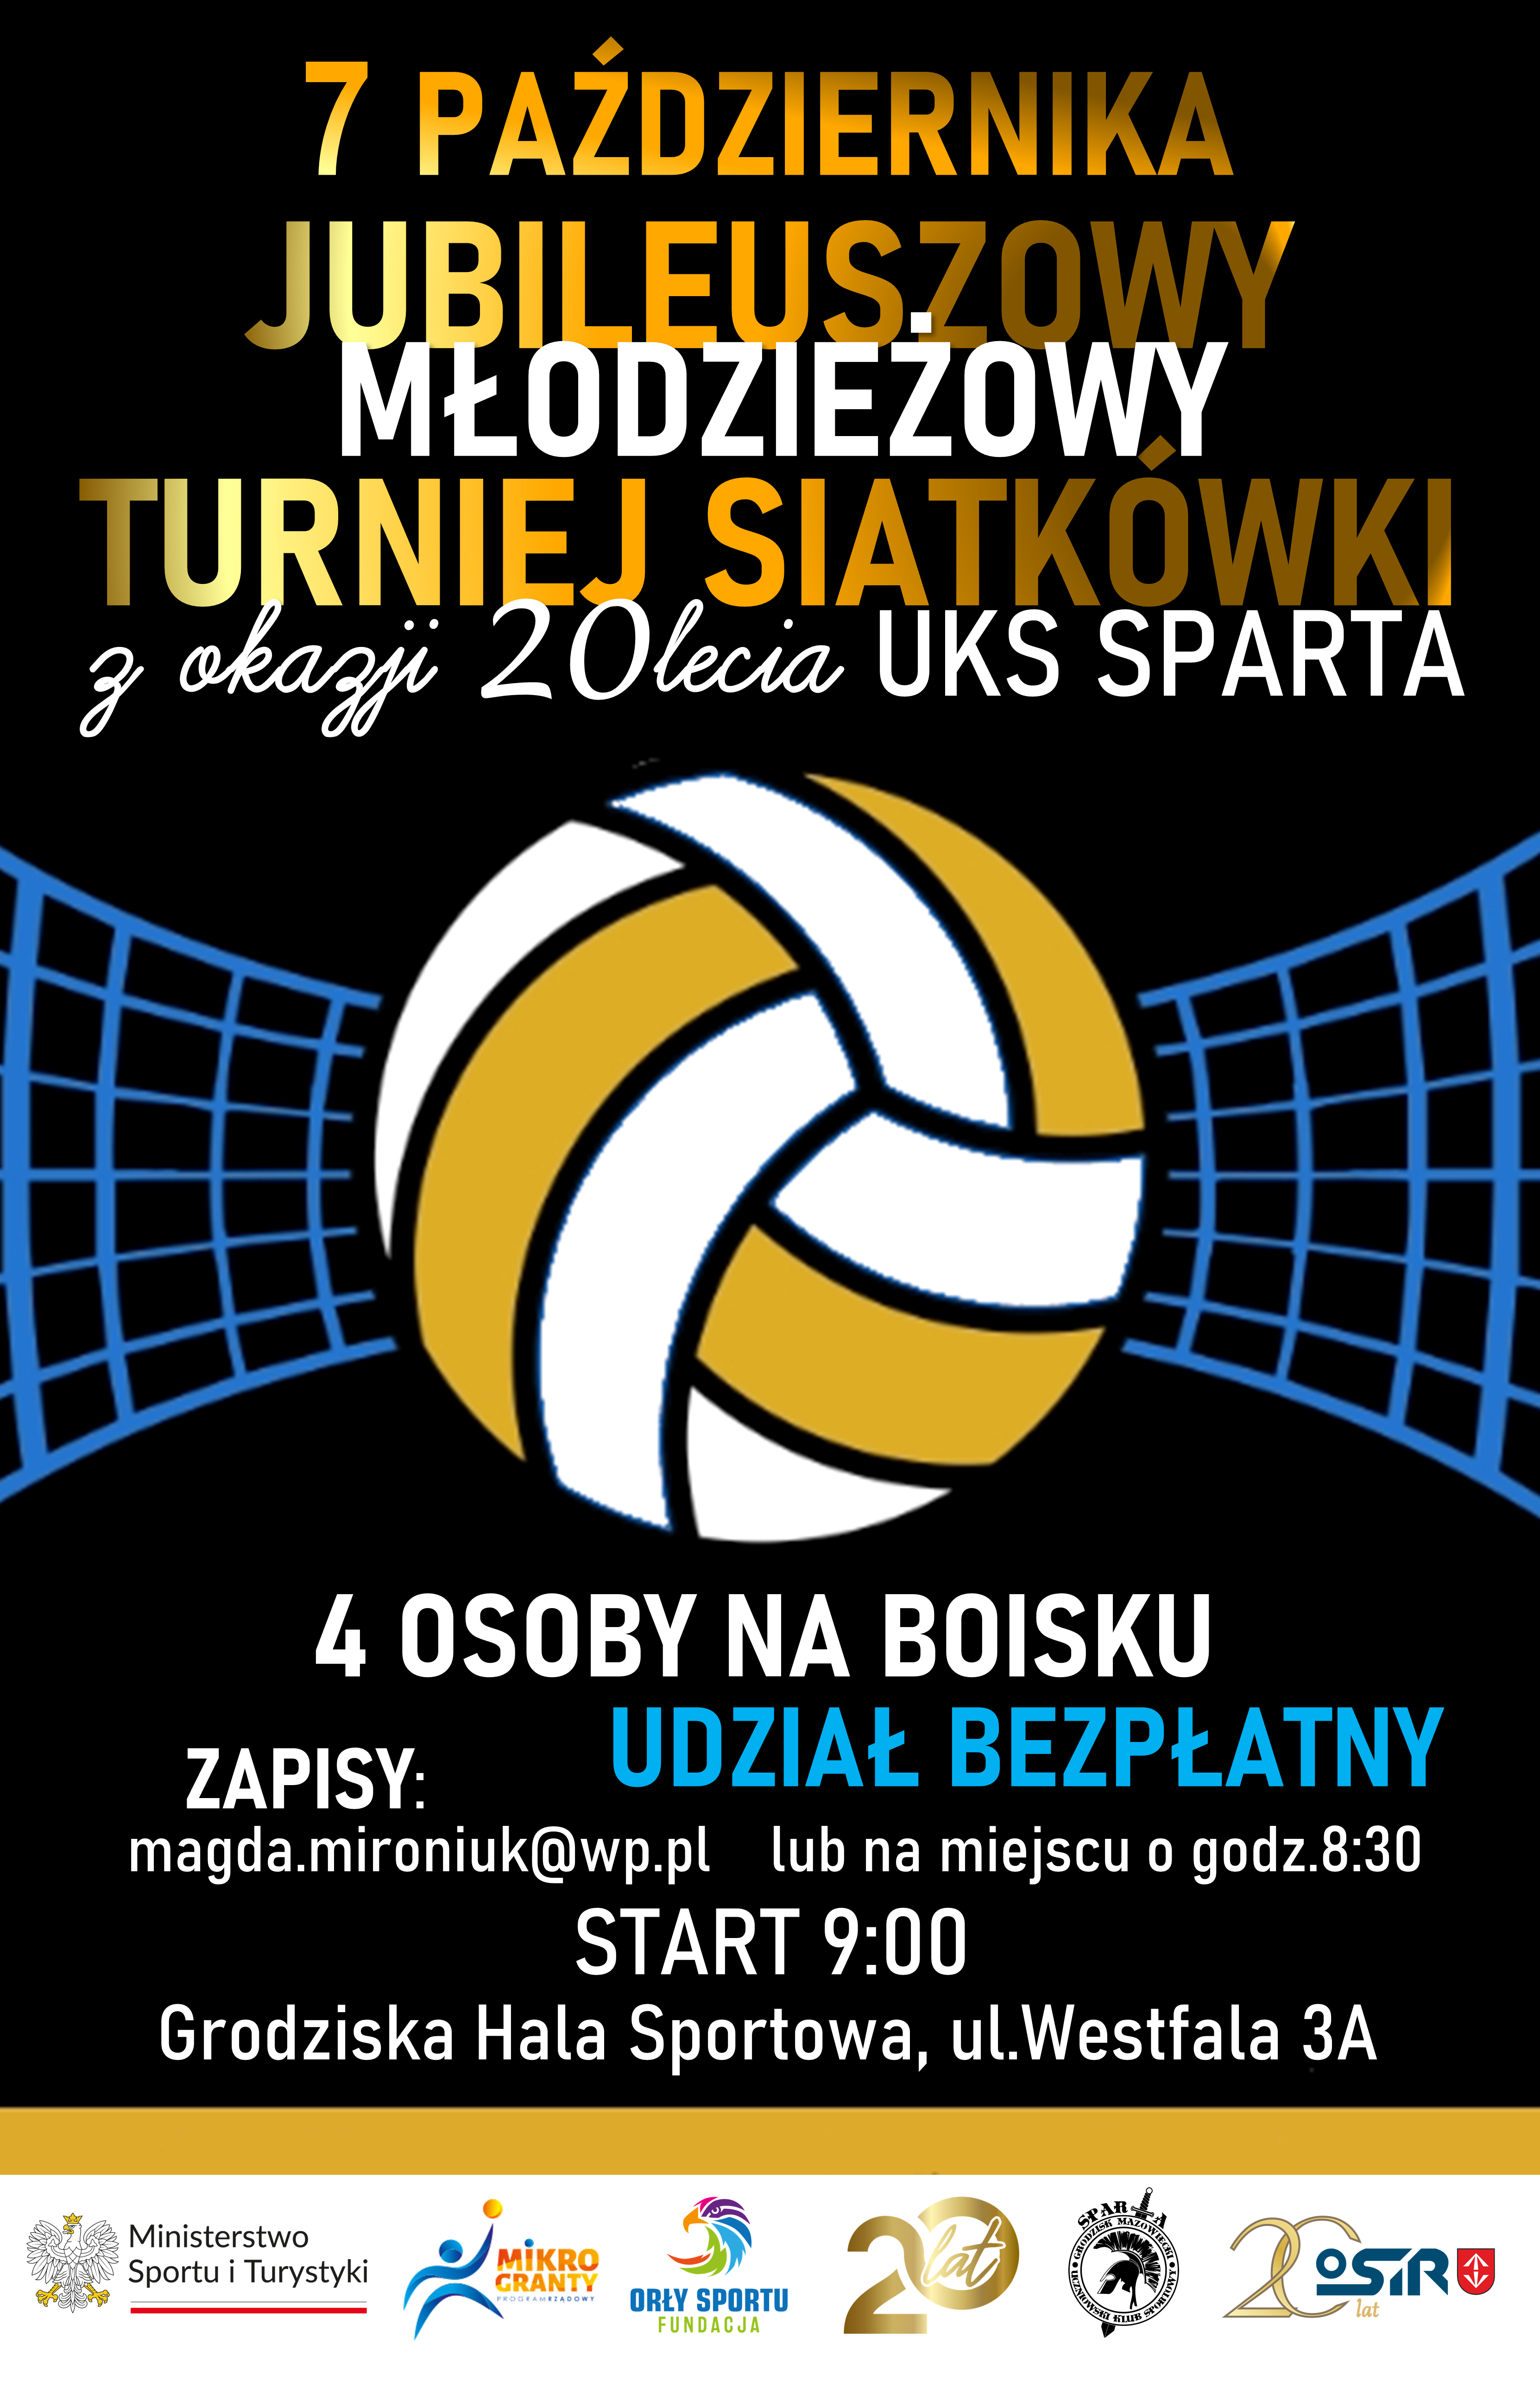 Jubileuszowy Młodzieżowy Turniej Siatkówki z okazji 20-lecia UKS Sparta/Grodziska Hala Sportowa